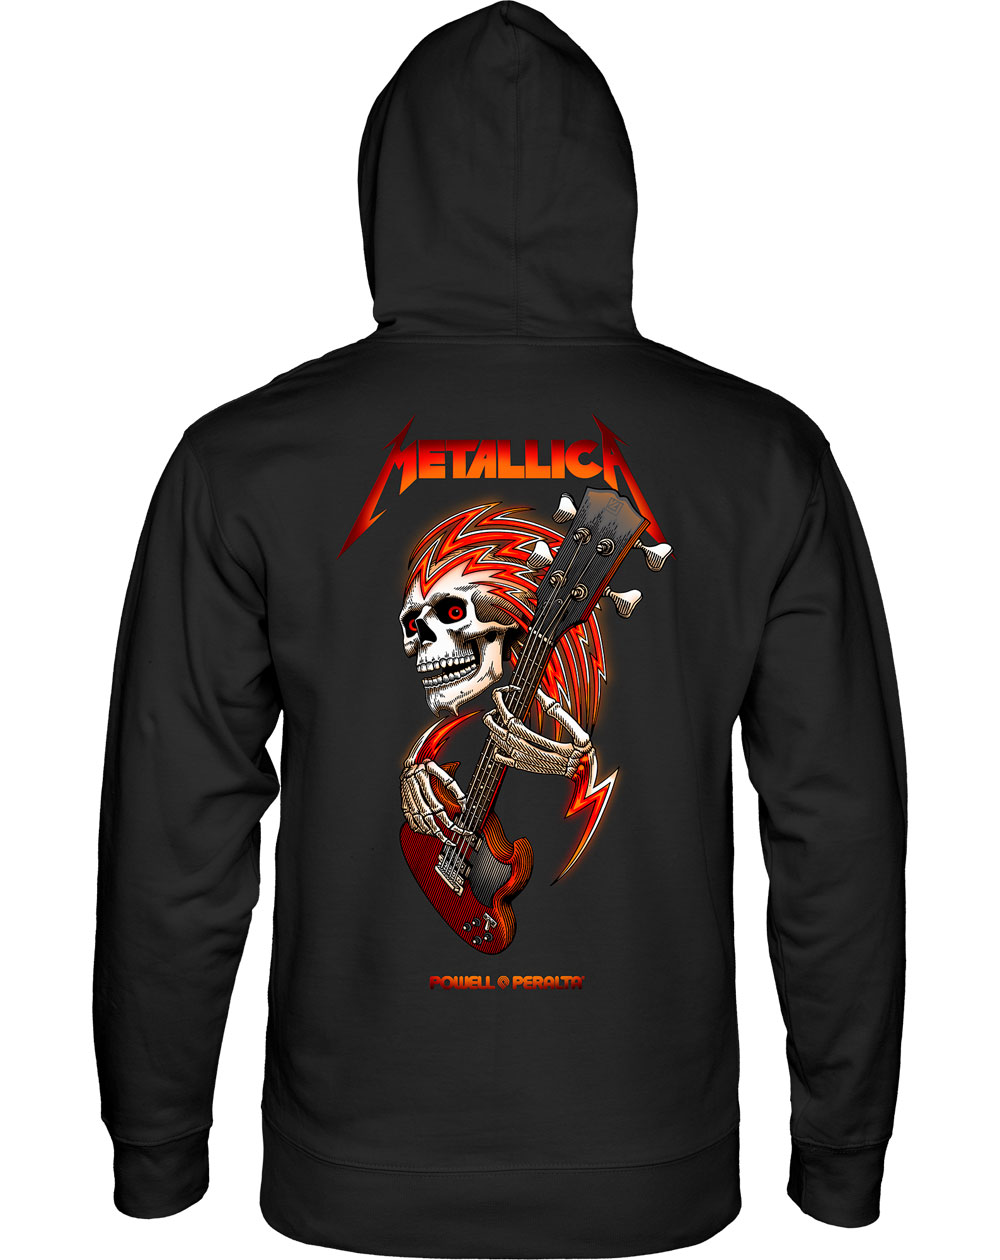 Powell Peralta Metallica Collab Moleton com Capuz para Homem Black